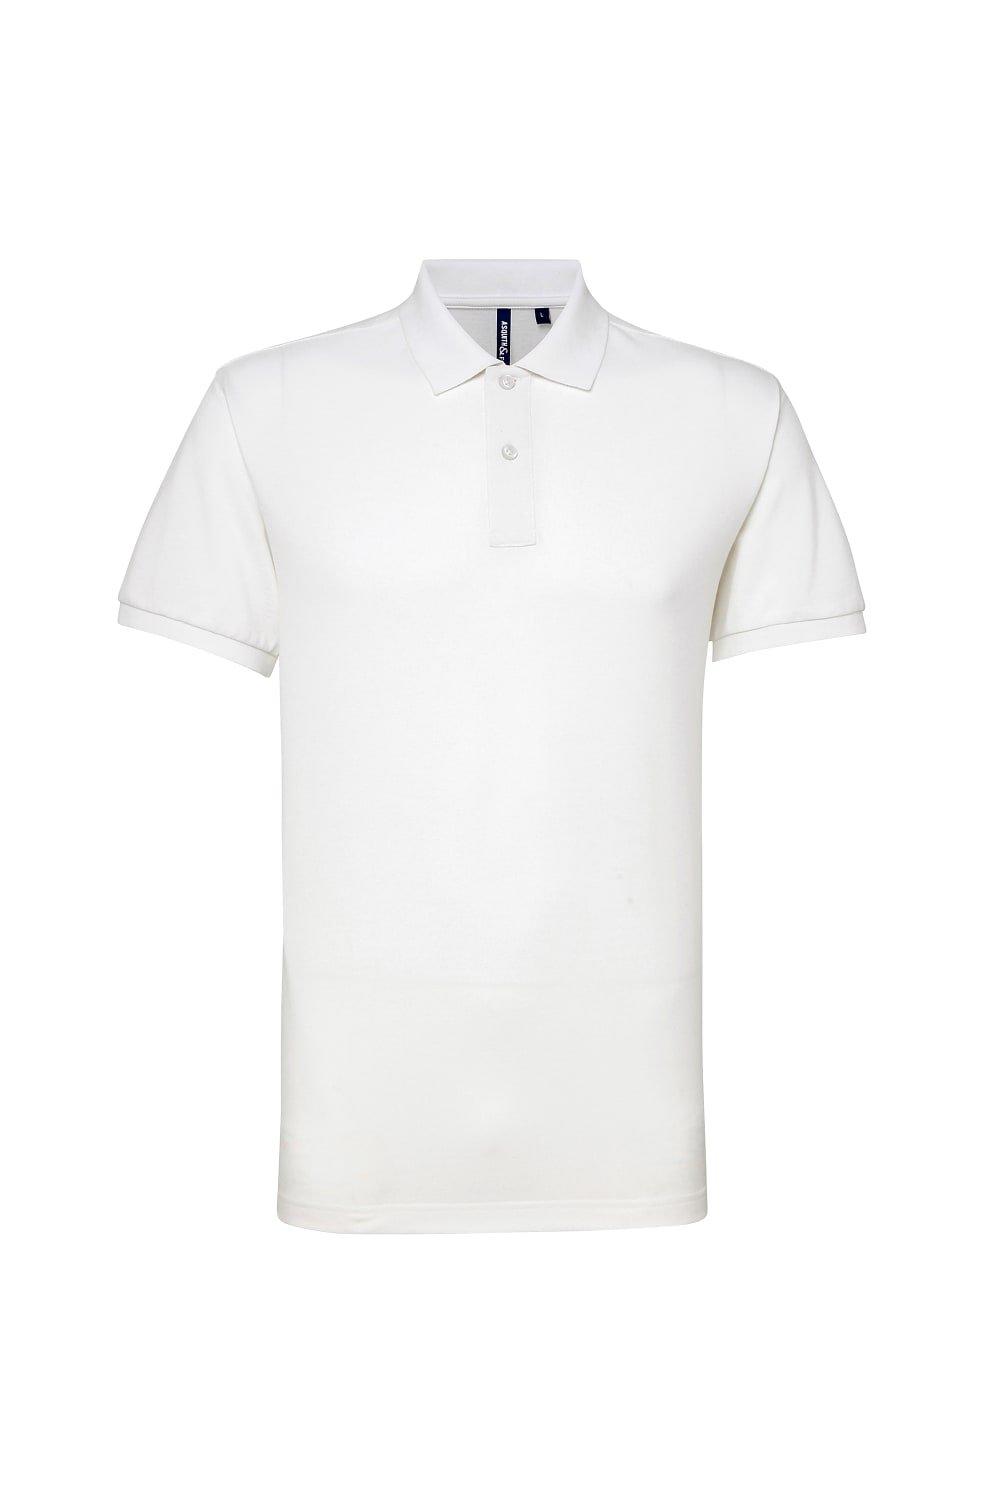 цена Рубашка поло Performance Mix с короткими рукавами Asquith & Fox, белый